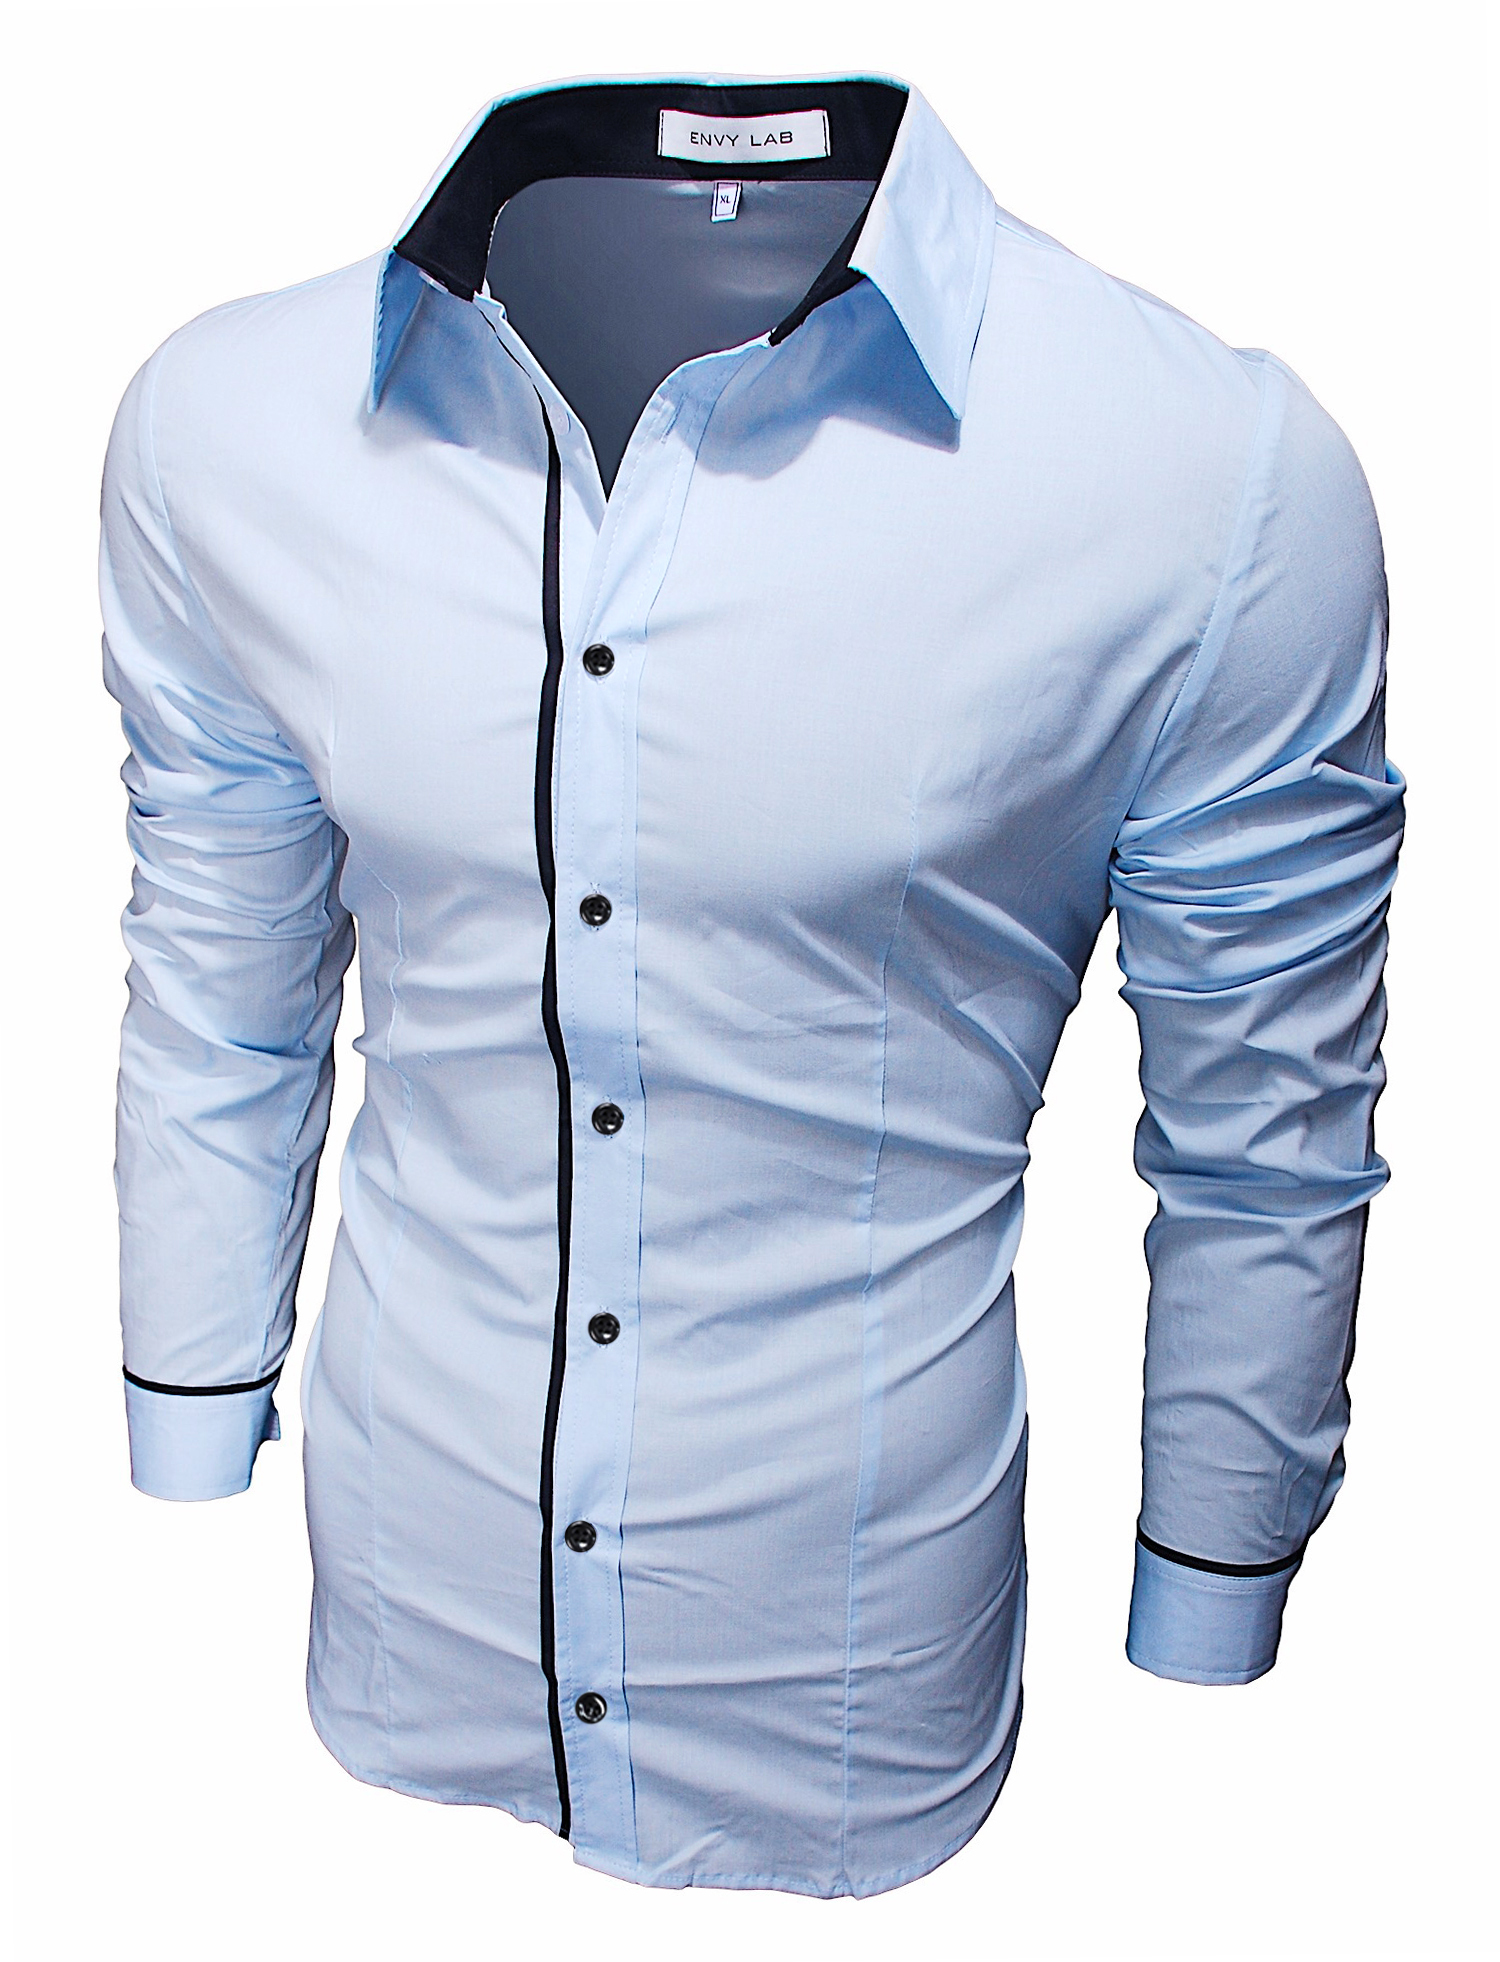 картинка товара рубашка blue buttons в магазине Envy LAB